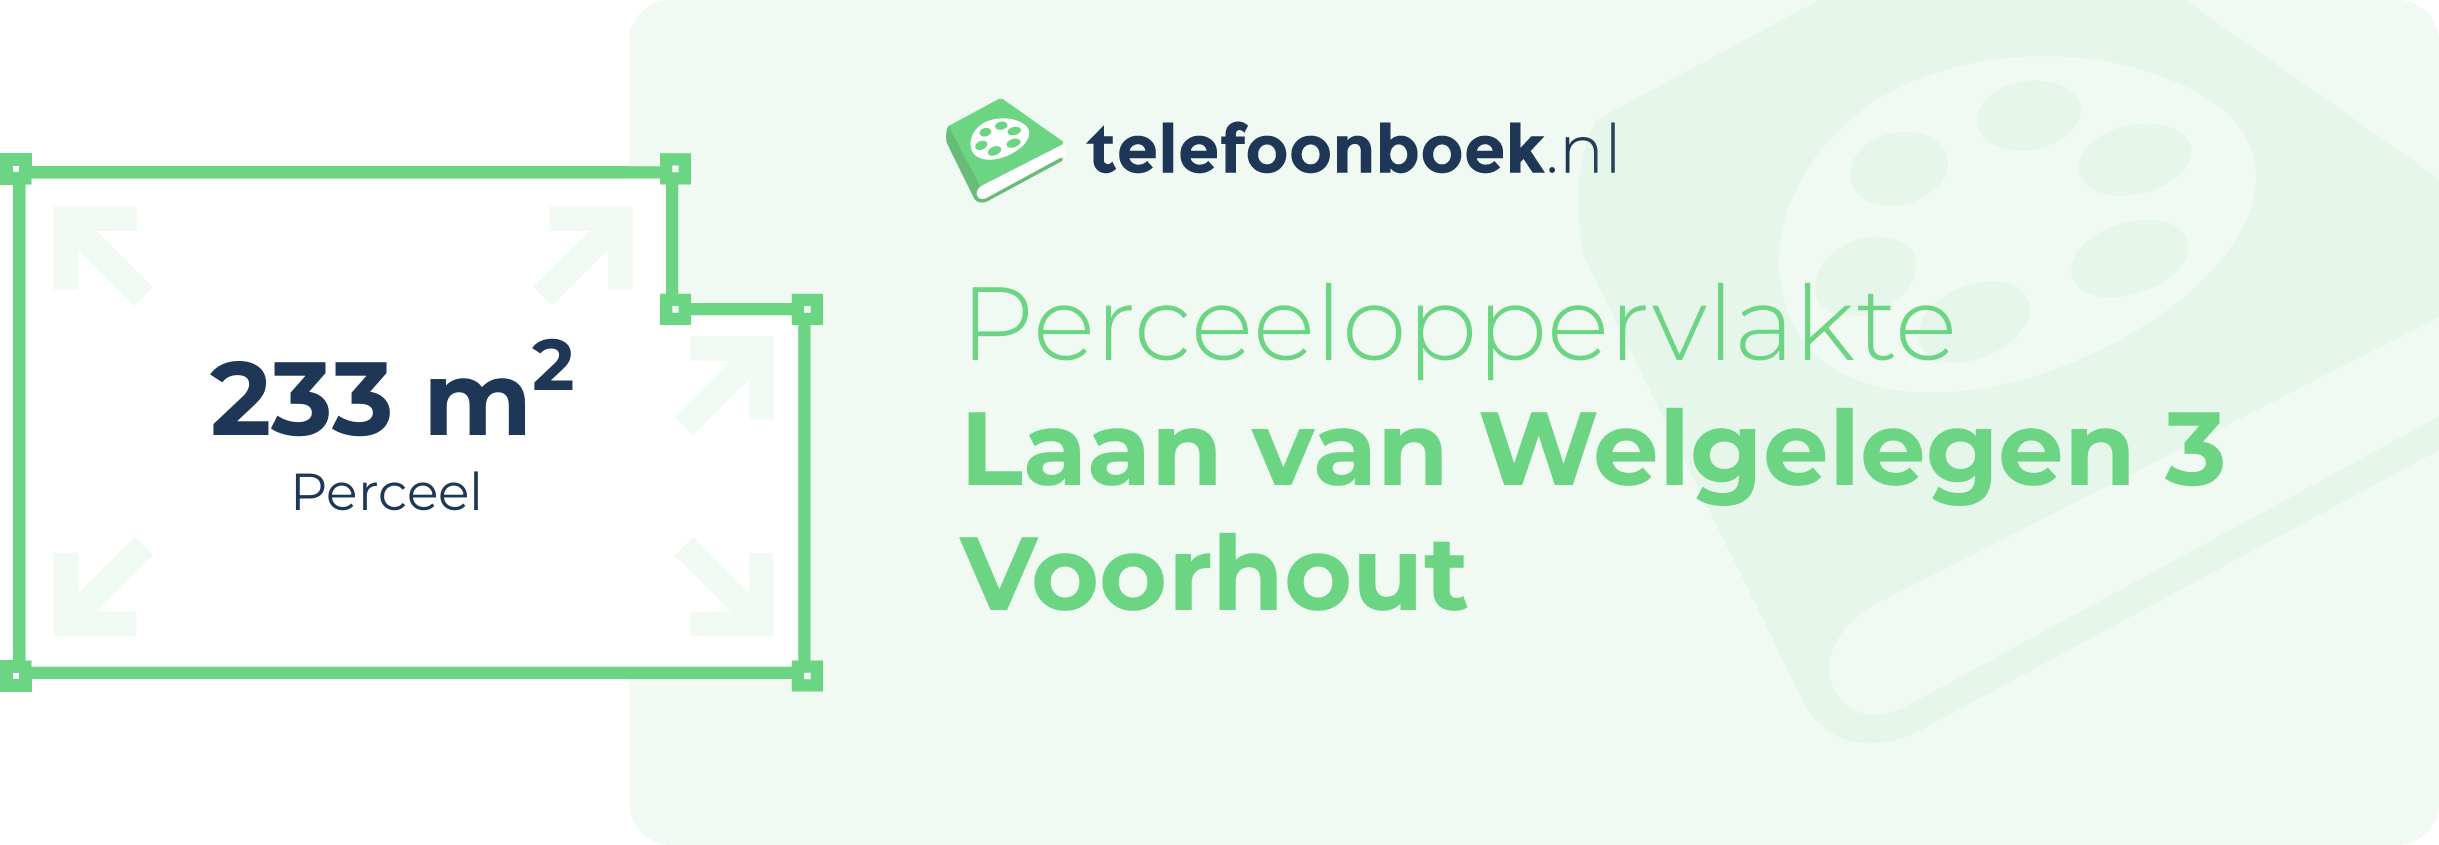 Perceeloppervlakte Laan Van Welgelegen 3 Voorhout